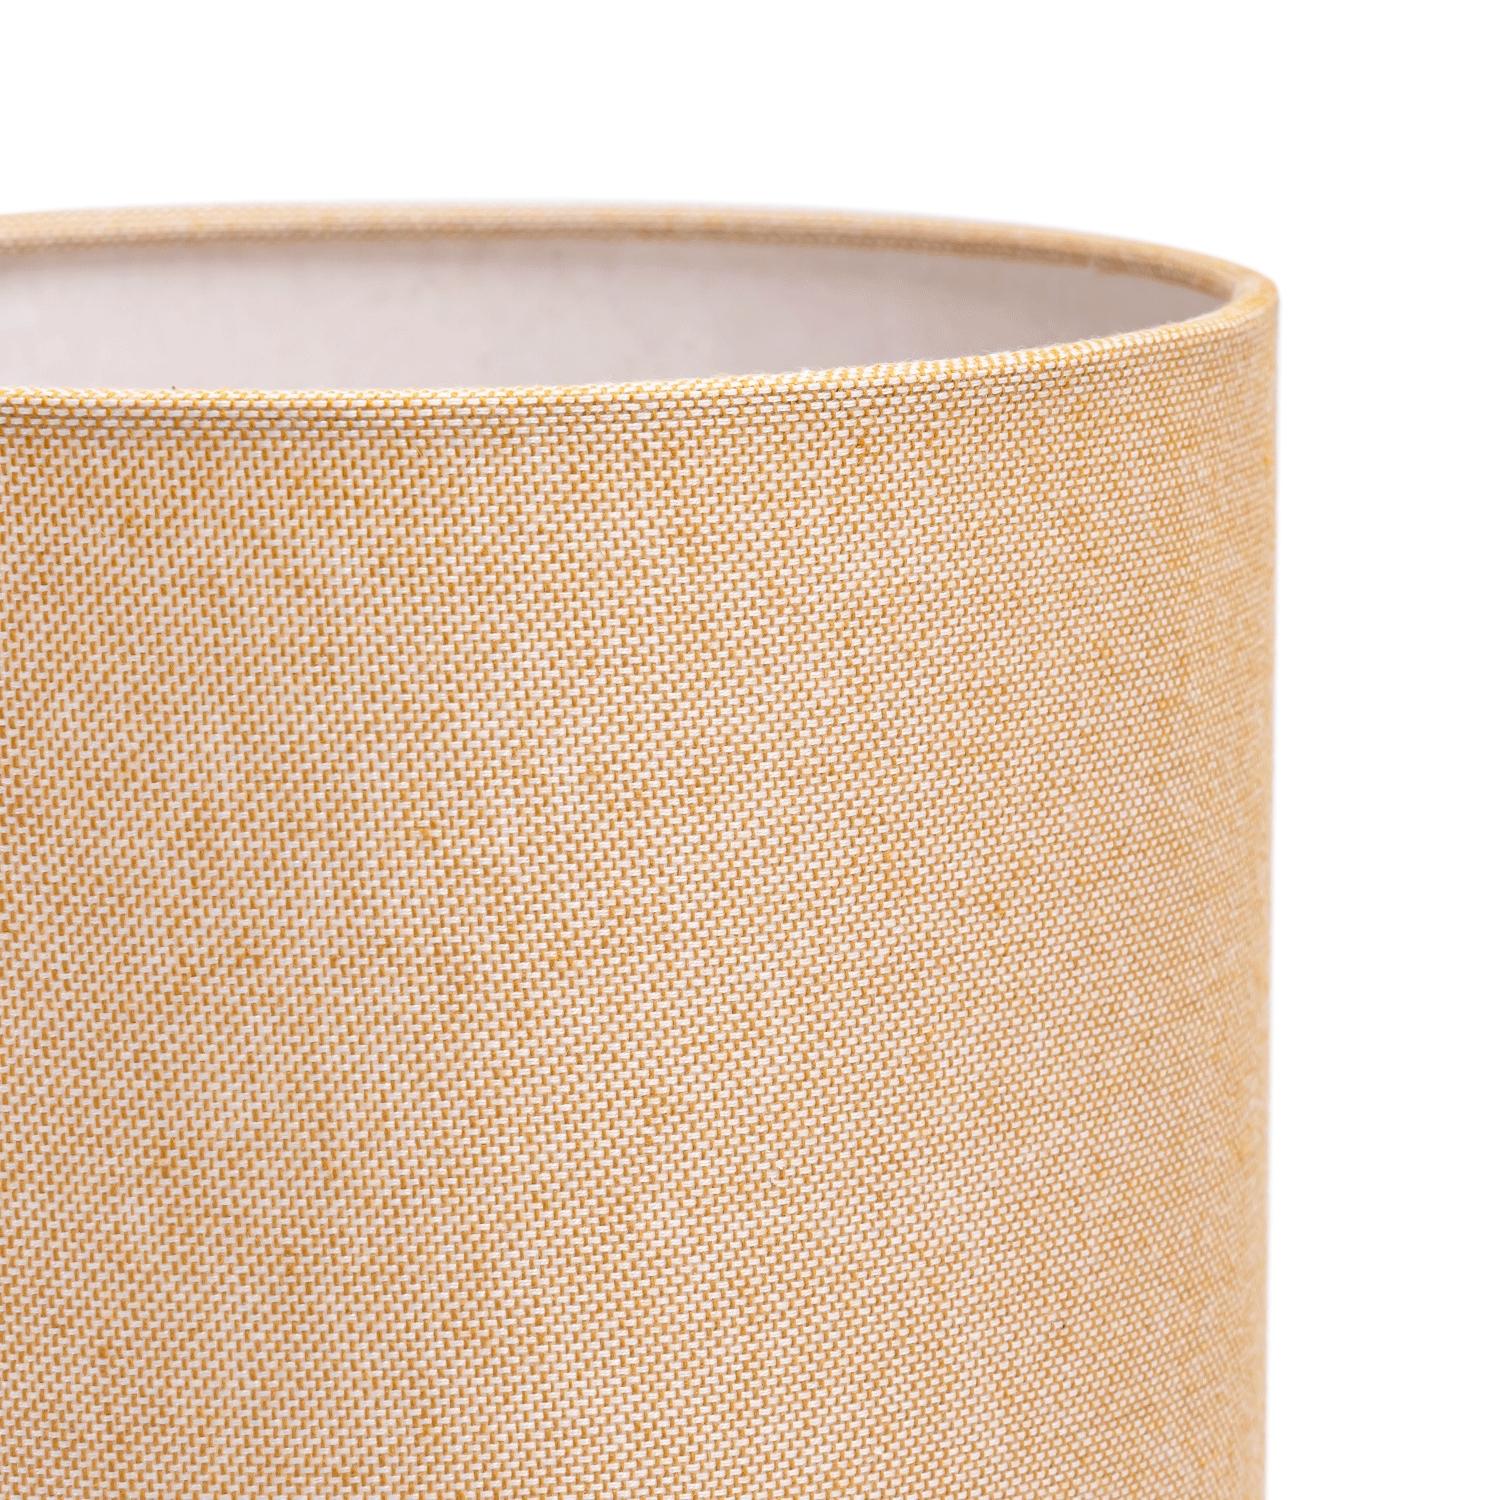 Ceramiczna lampa stołowa (bez źarówki) E27 Aigostar